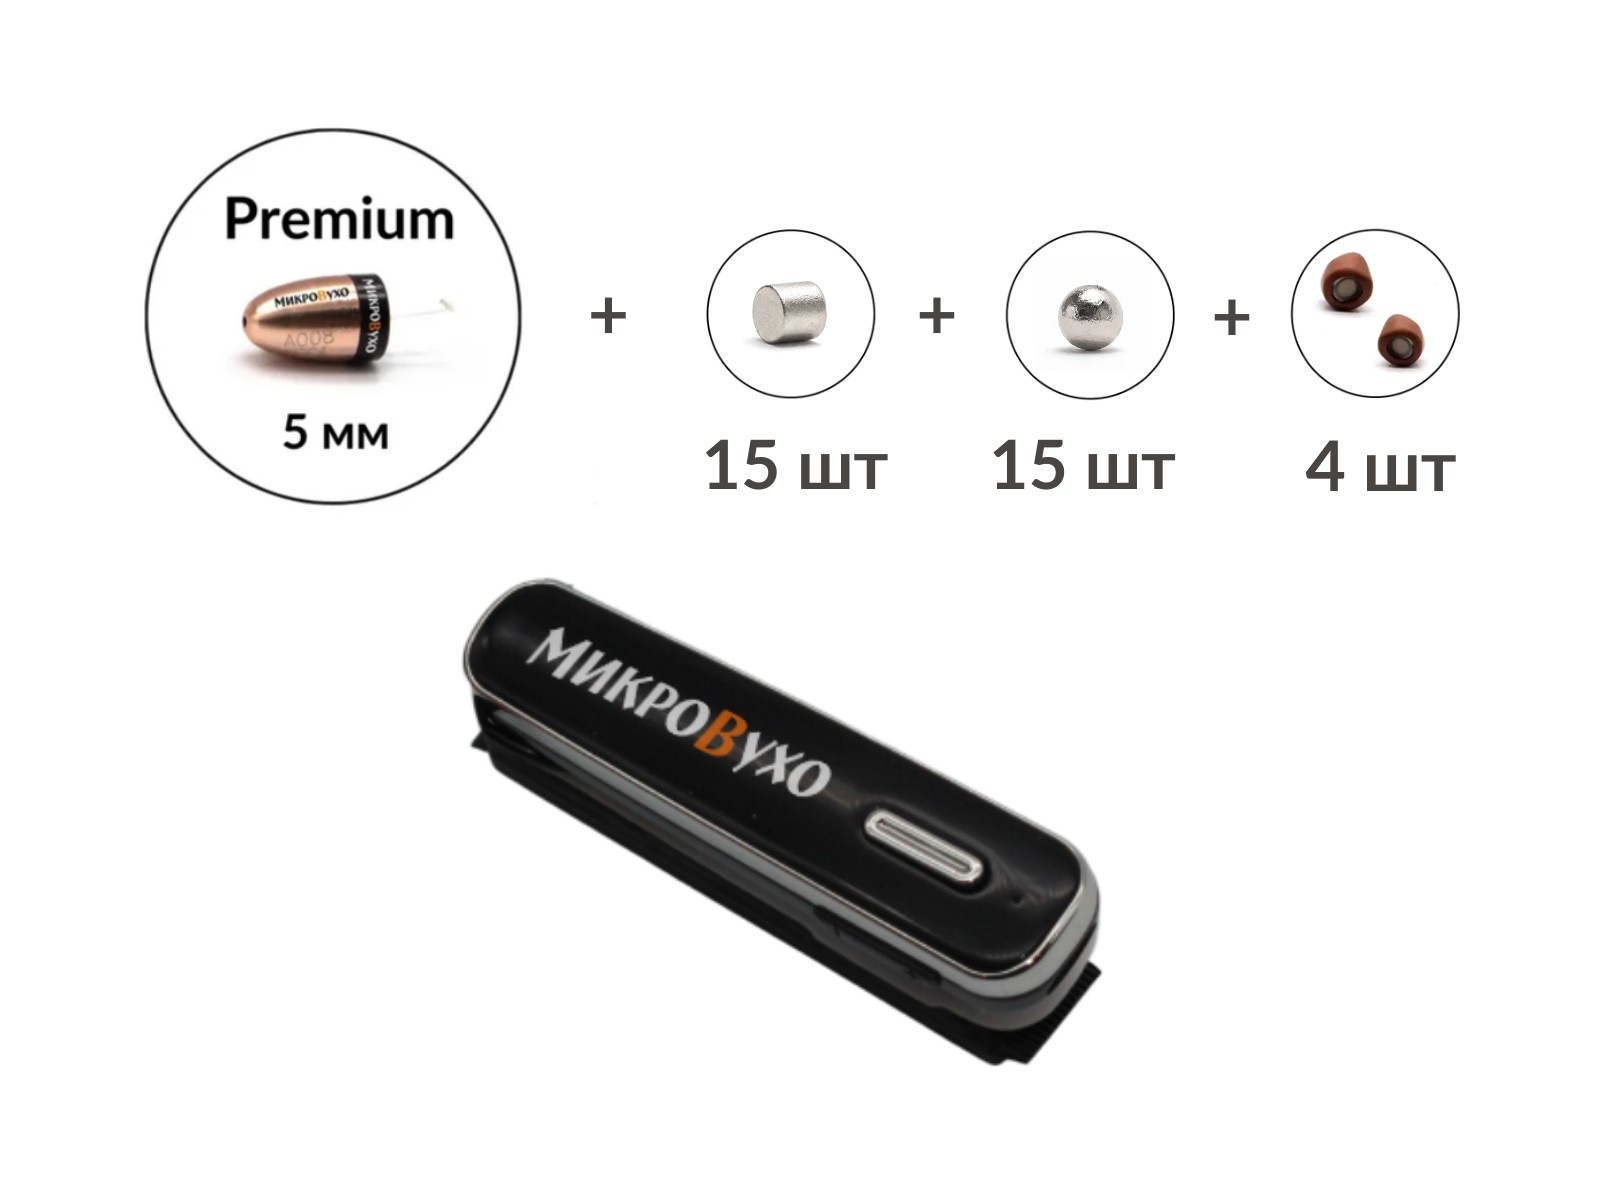 Универсальная гарнитура Bluetooth Box Premier Lite Plus  с капсулой Premium и магнитами 2 мм - изображение